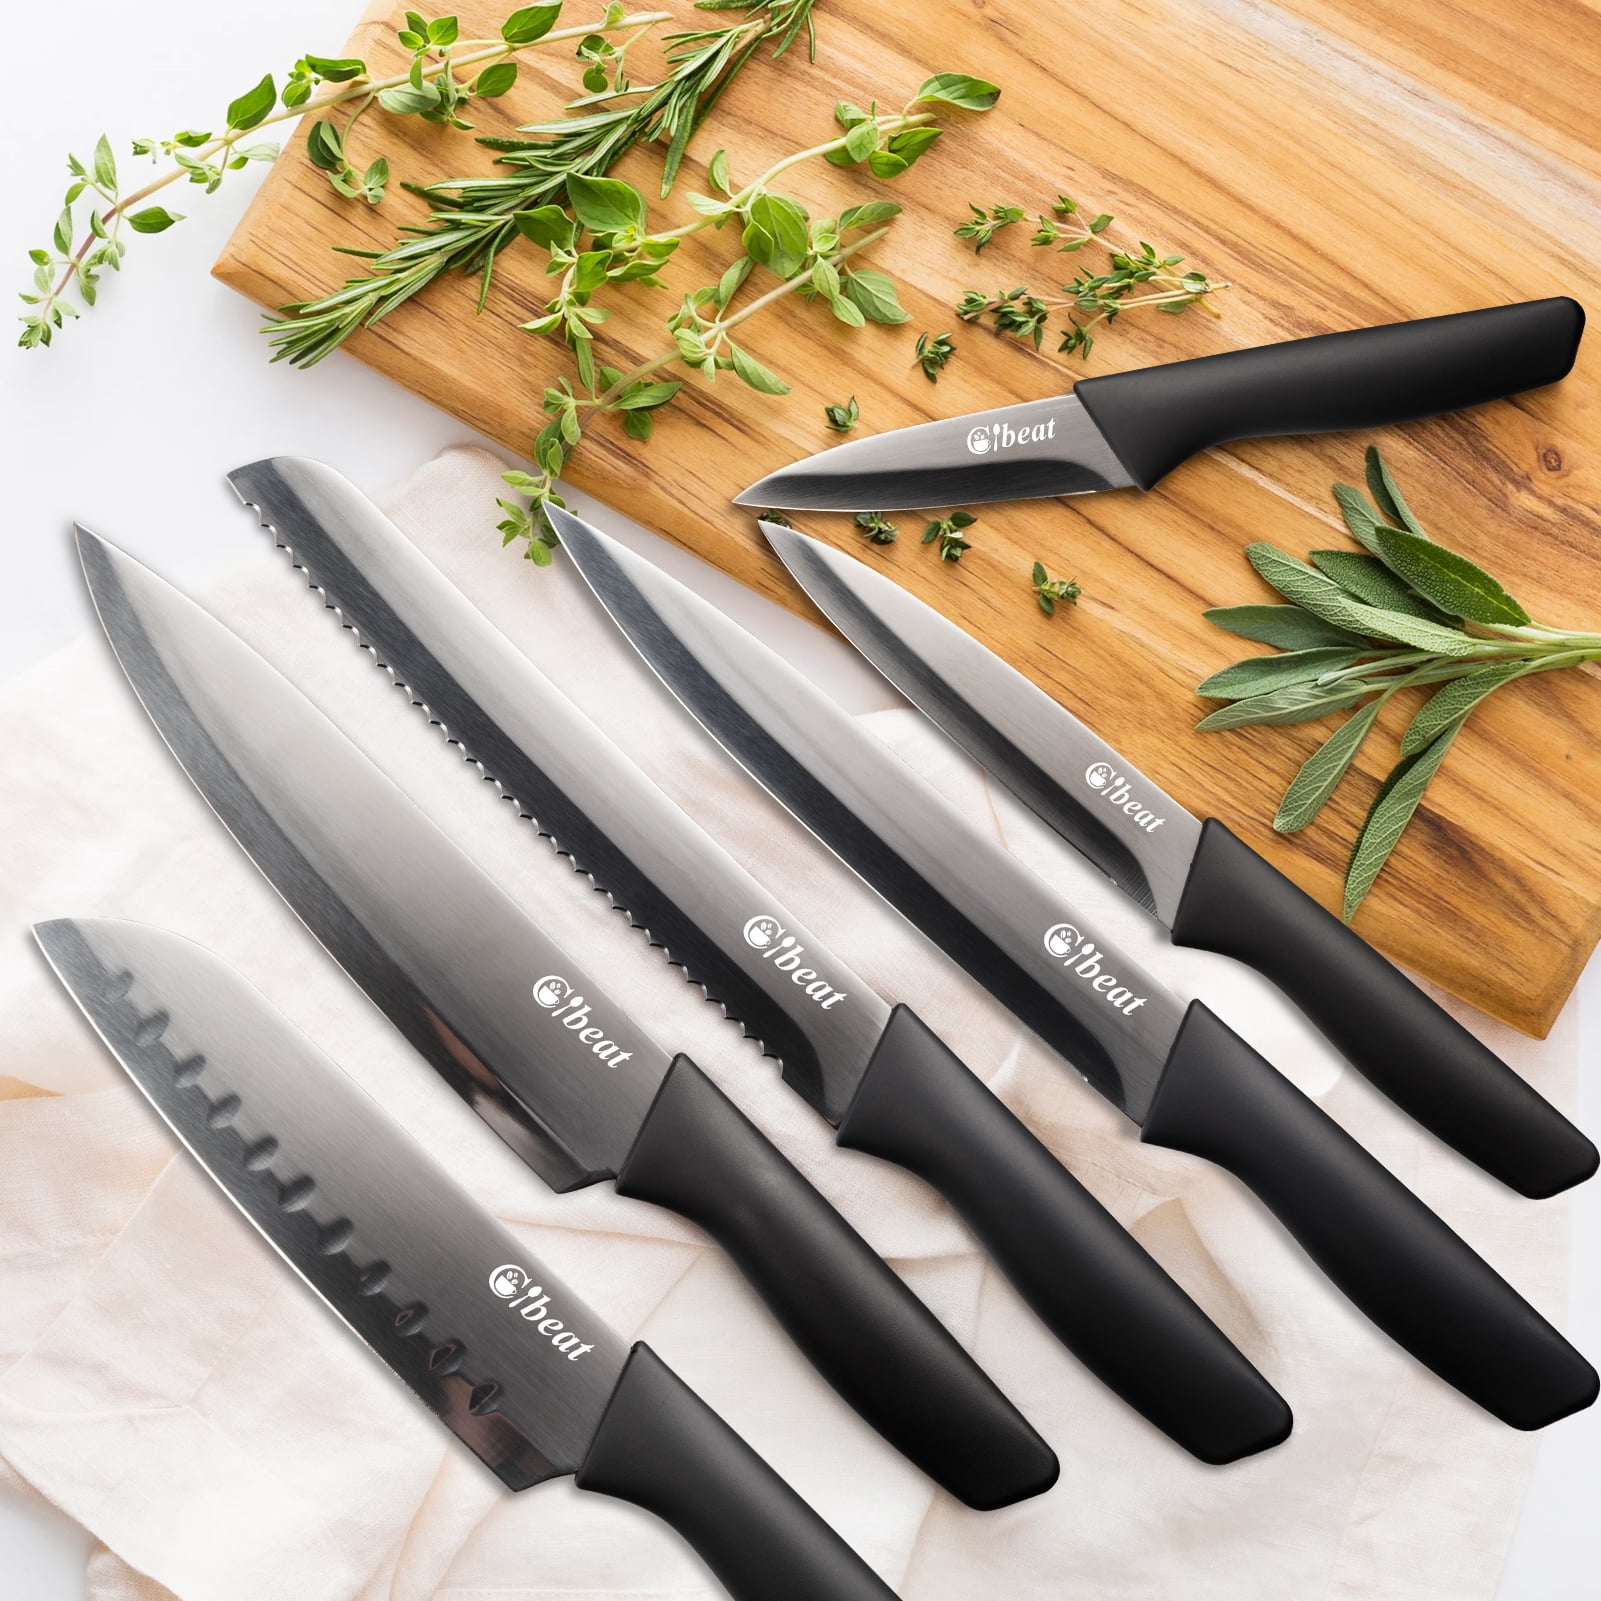 Knievsset, Sharp Kitchen Knife Set, Fruit Knife, Kitchen Knife